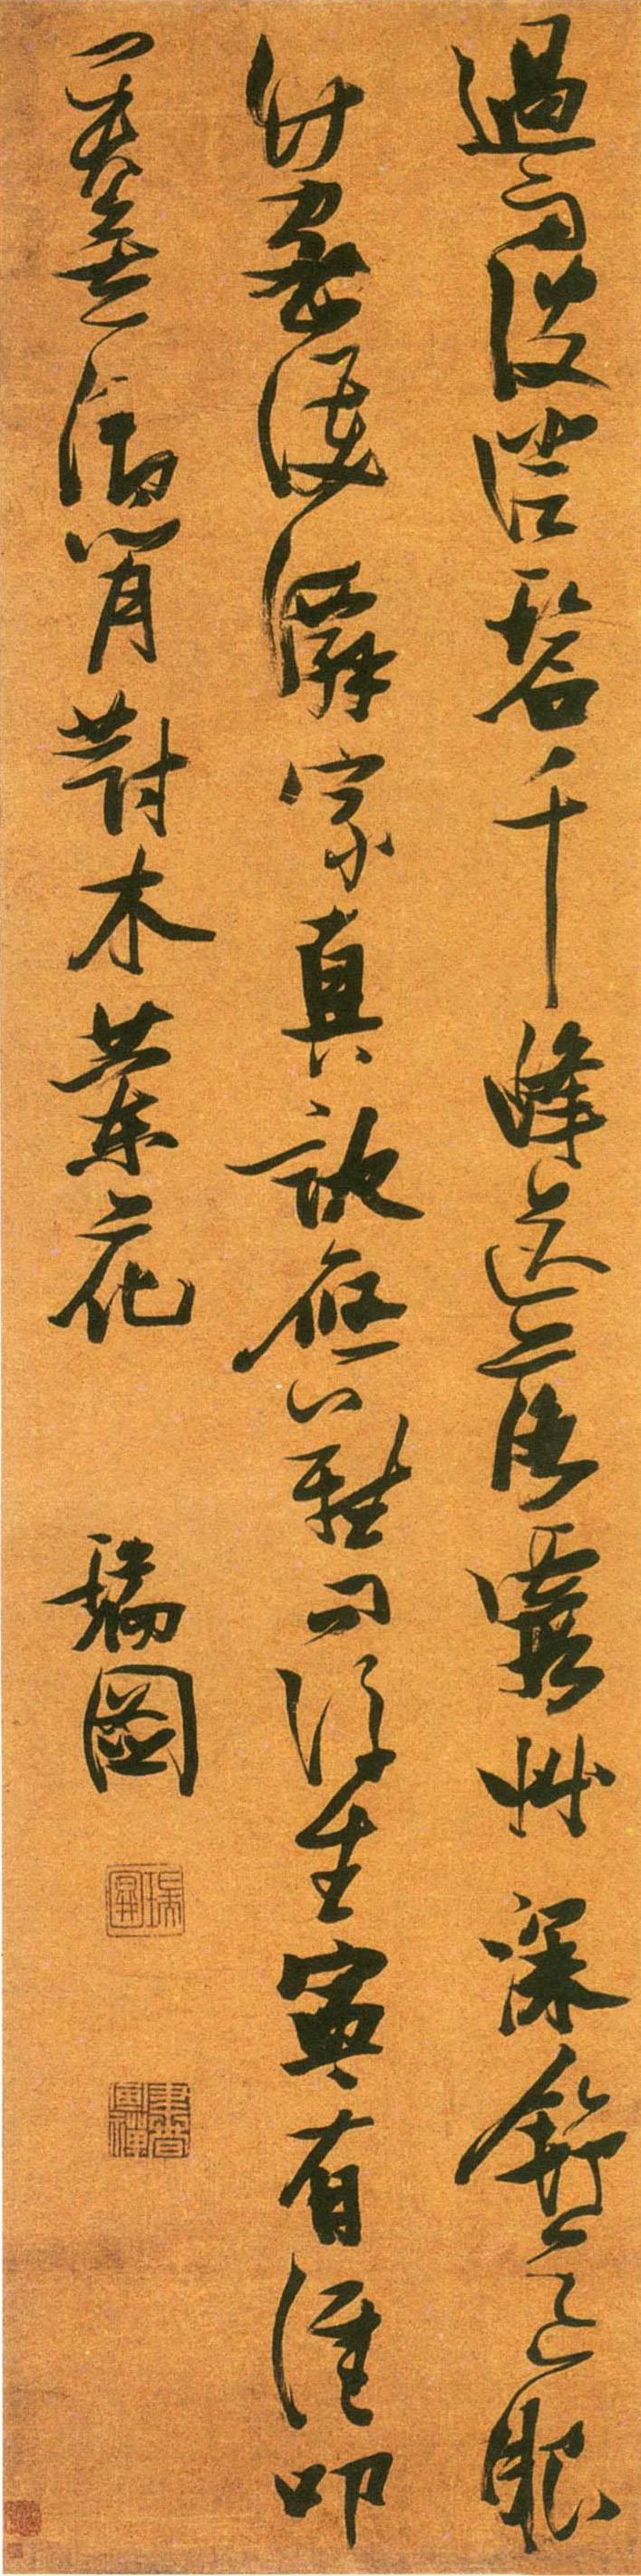 张瑞图《草书五律诗轴》-西泠印社藏 (图1)